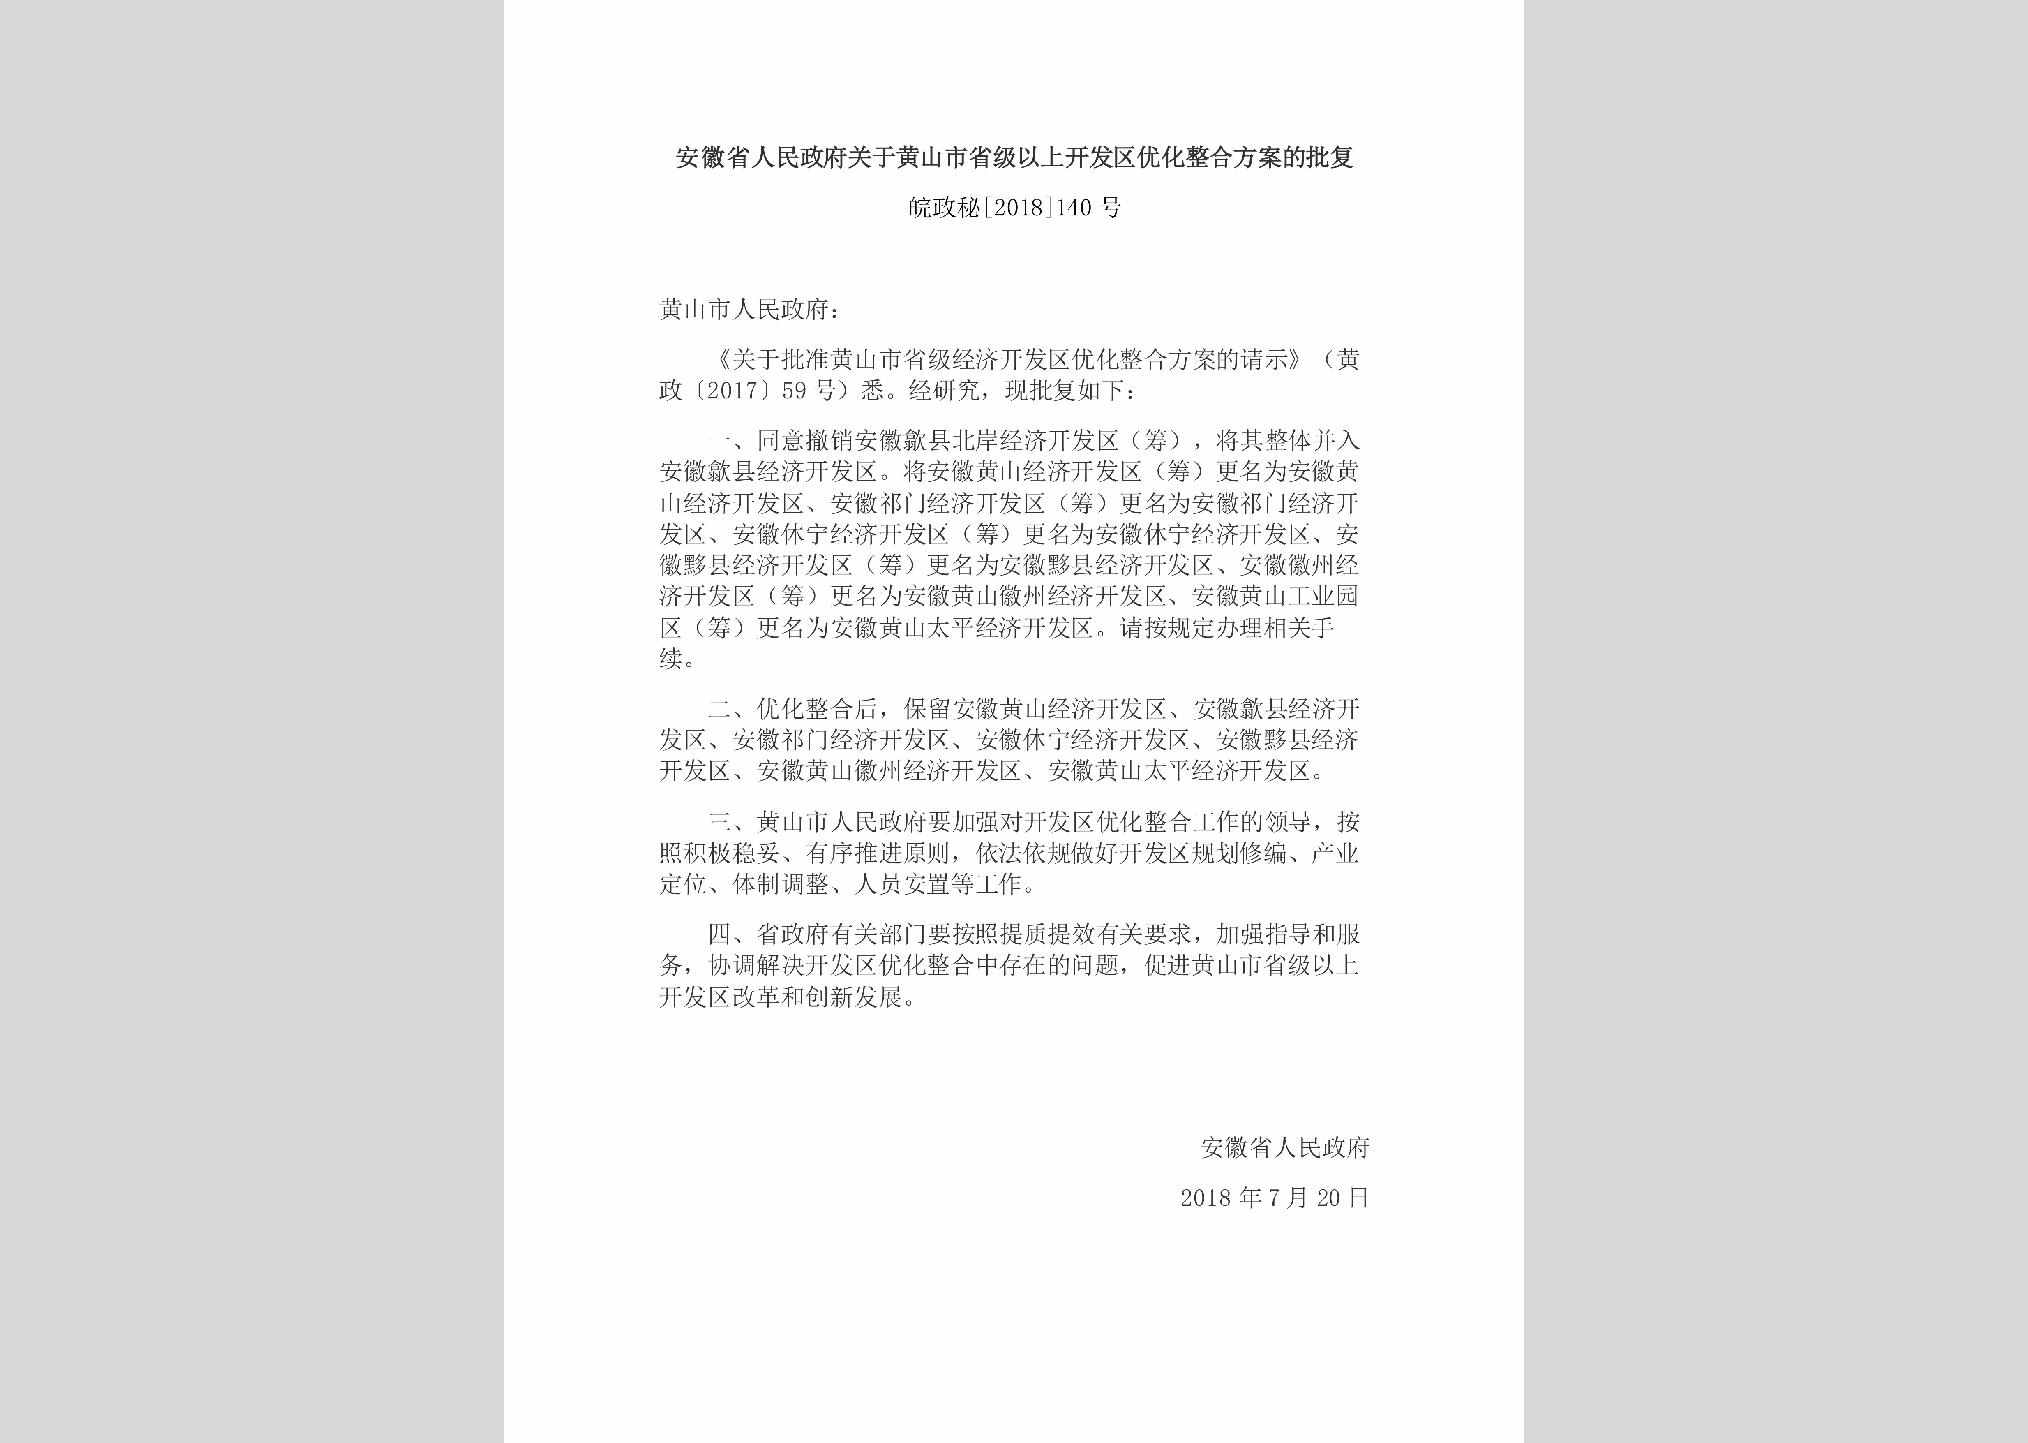 皖政秘[2018]140号：安徽省人民政府关于黄山市省级以上开发区优化整合方案的批复